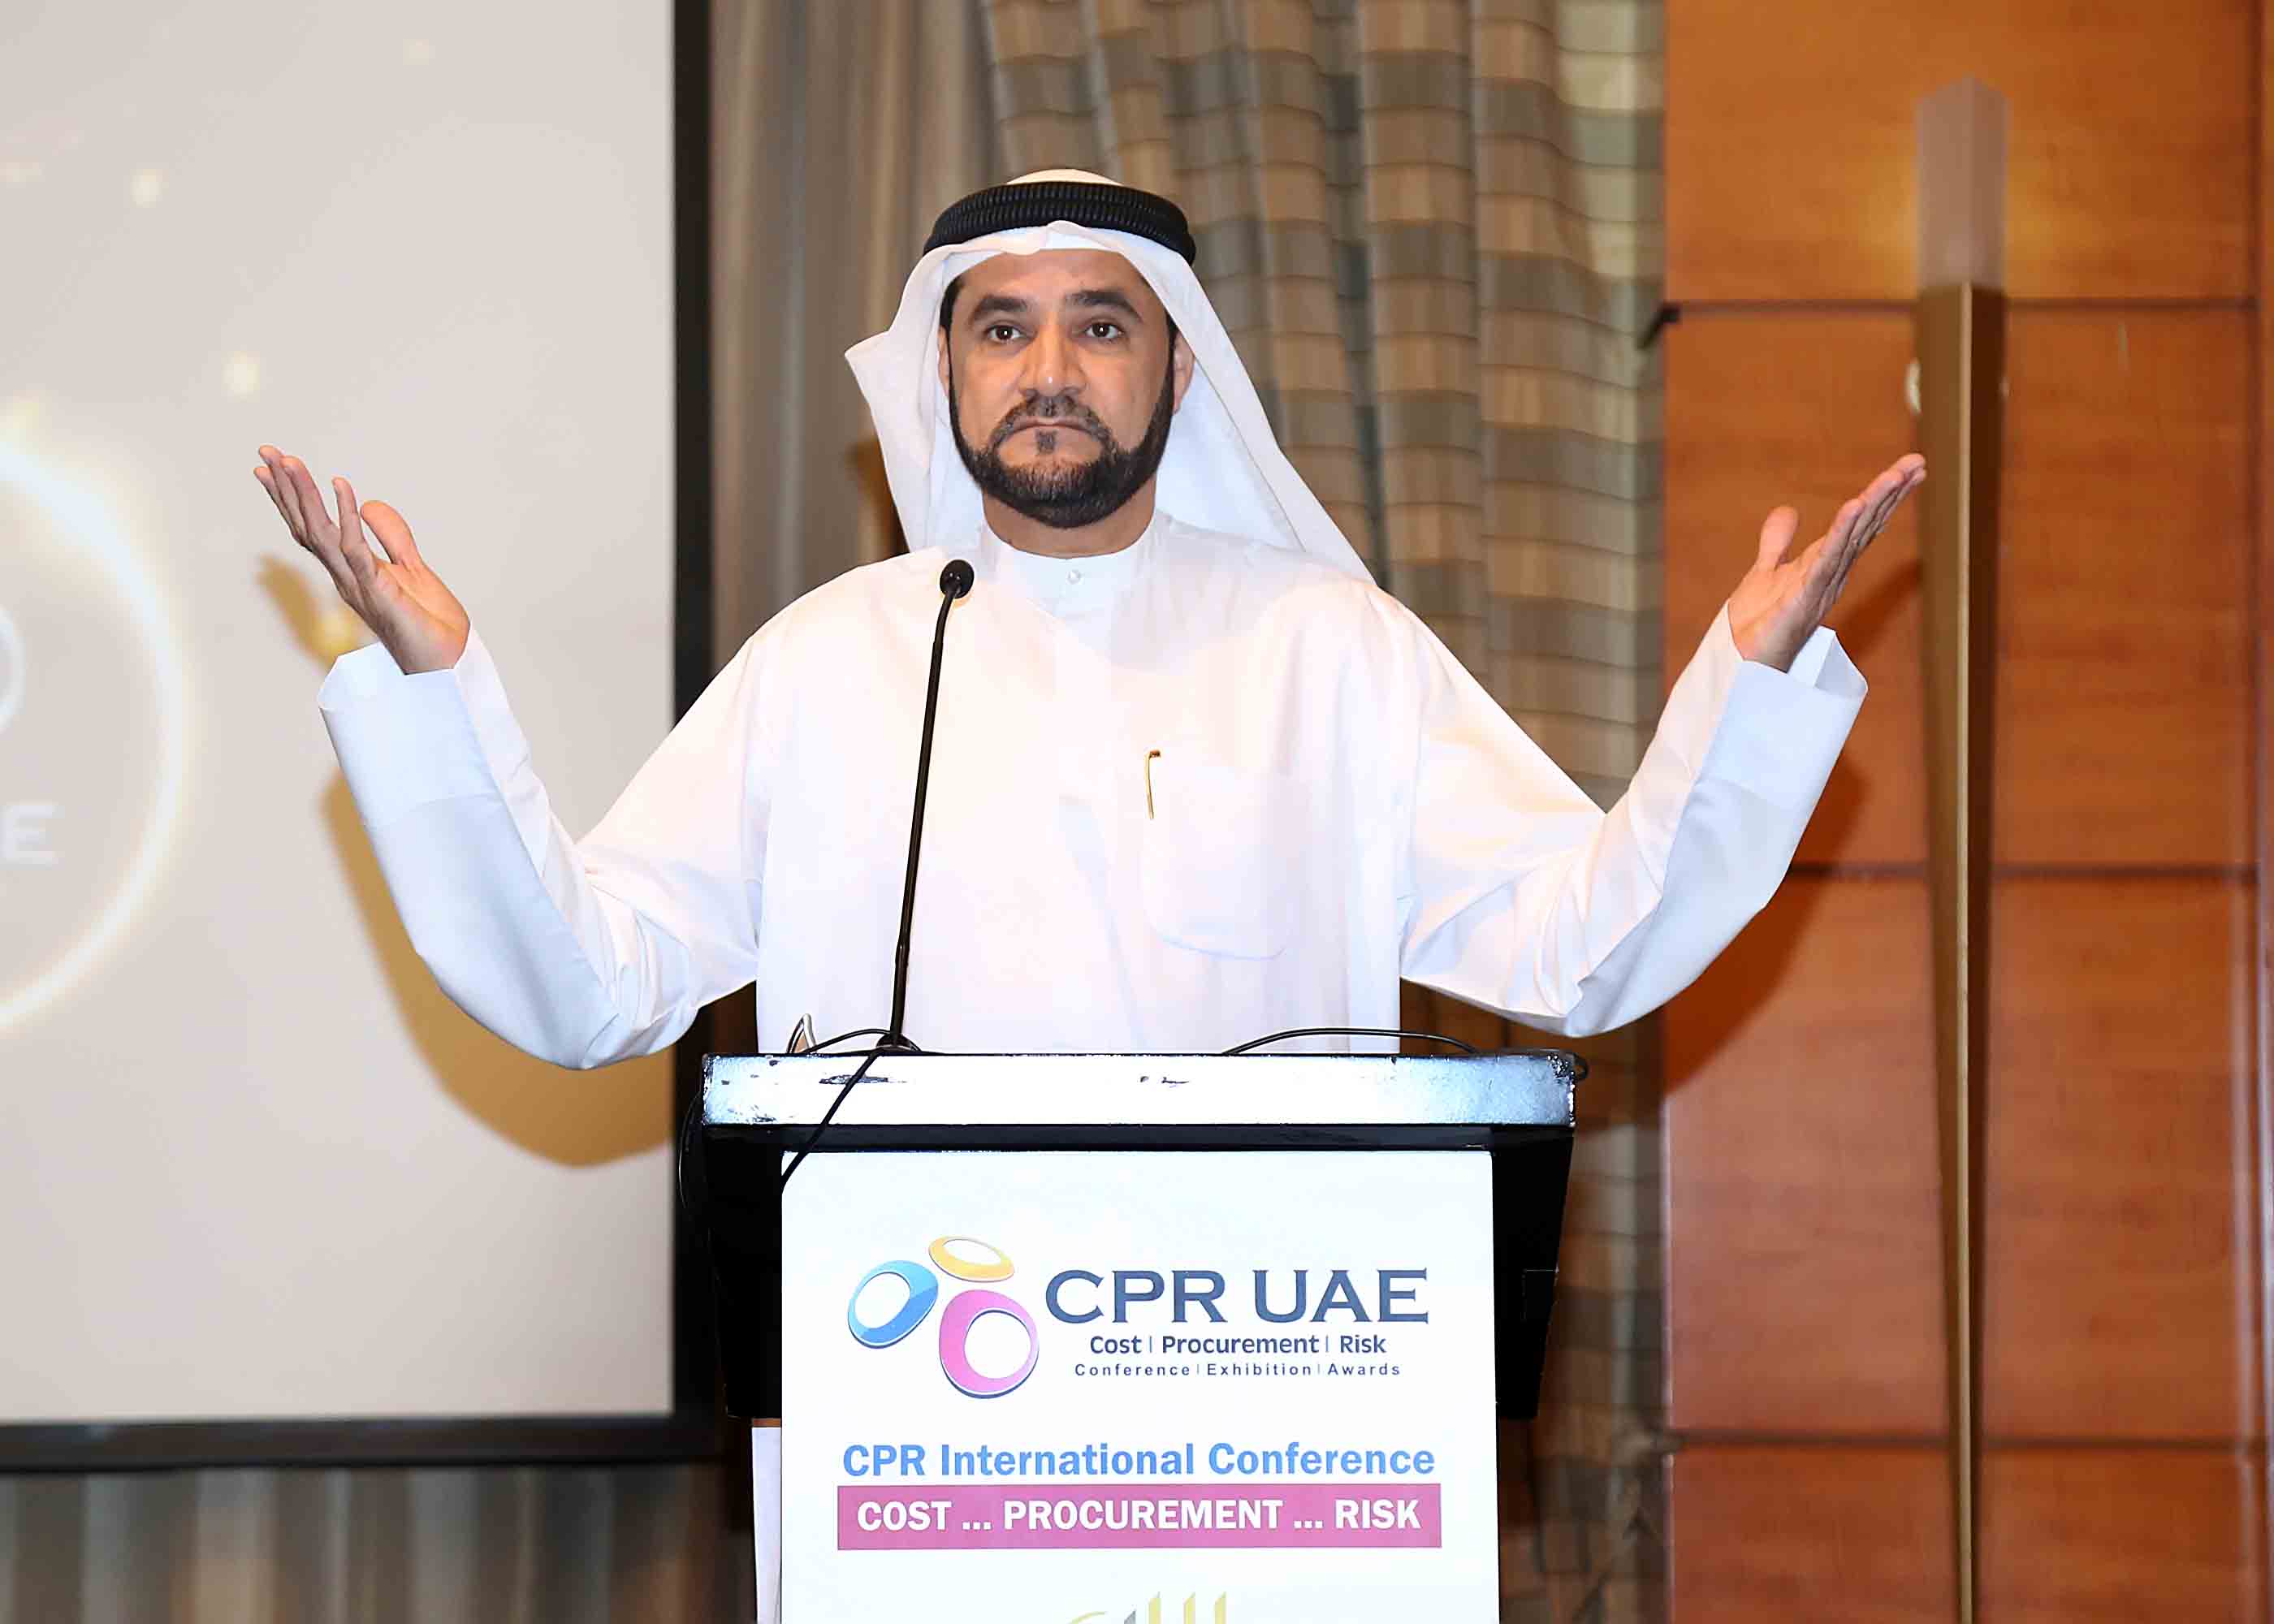 CPR UAE 2018